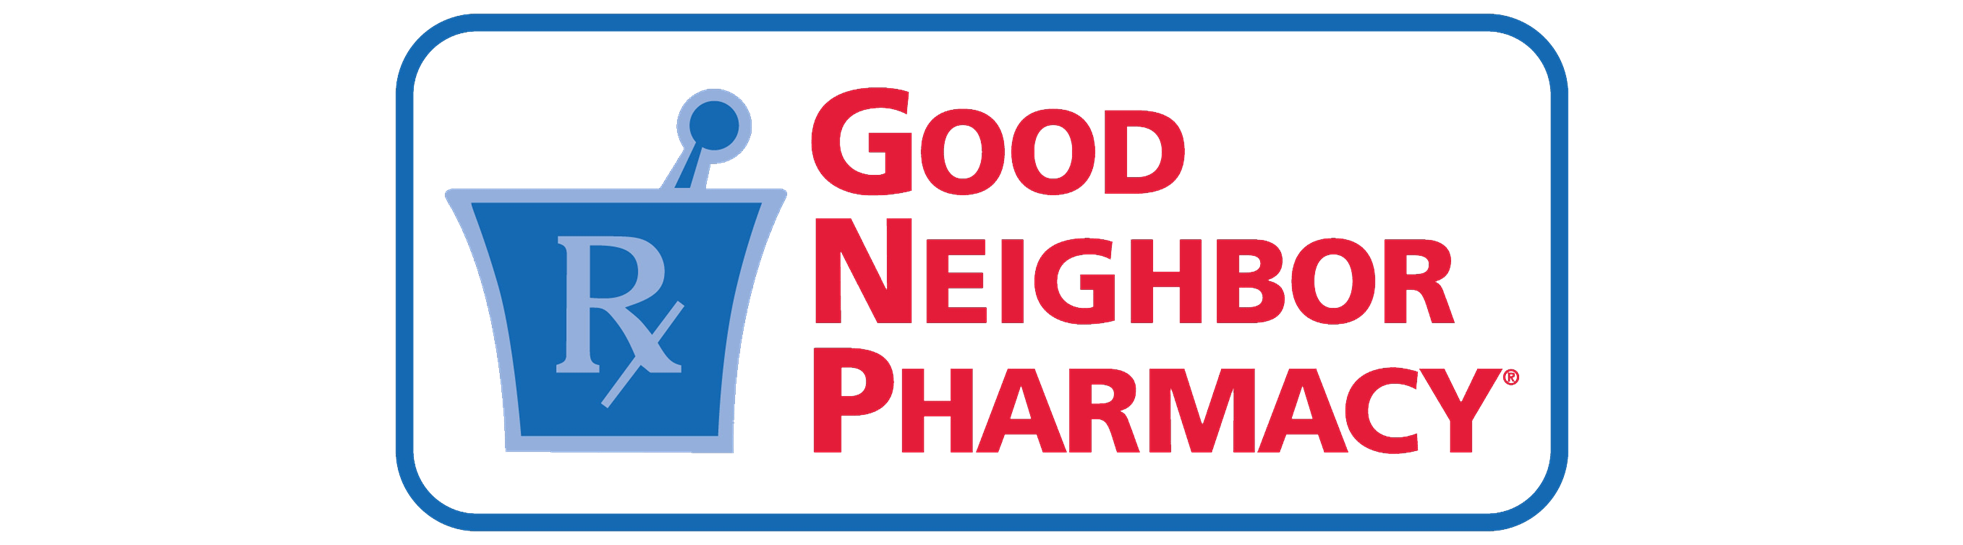 McBain Family Pharmacy is a Good Neighbor Pharmacy